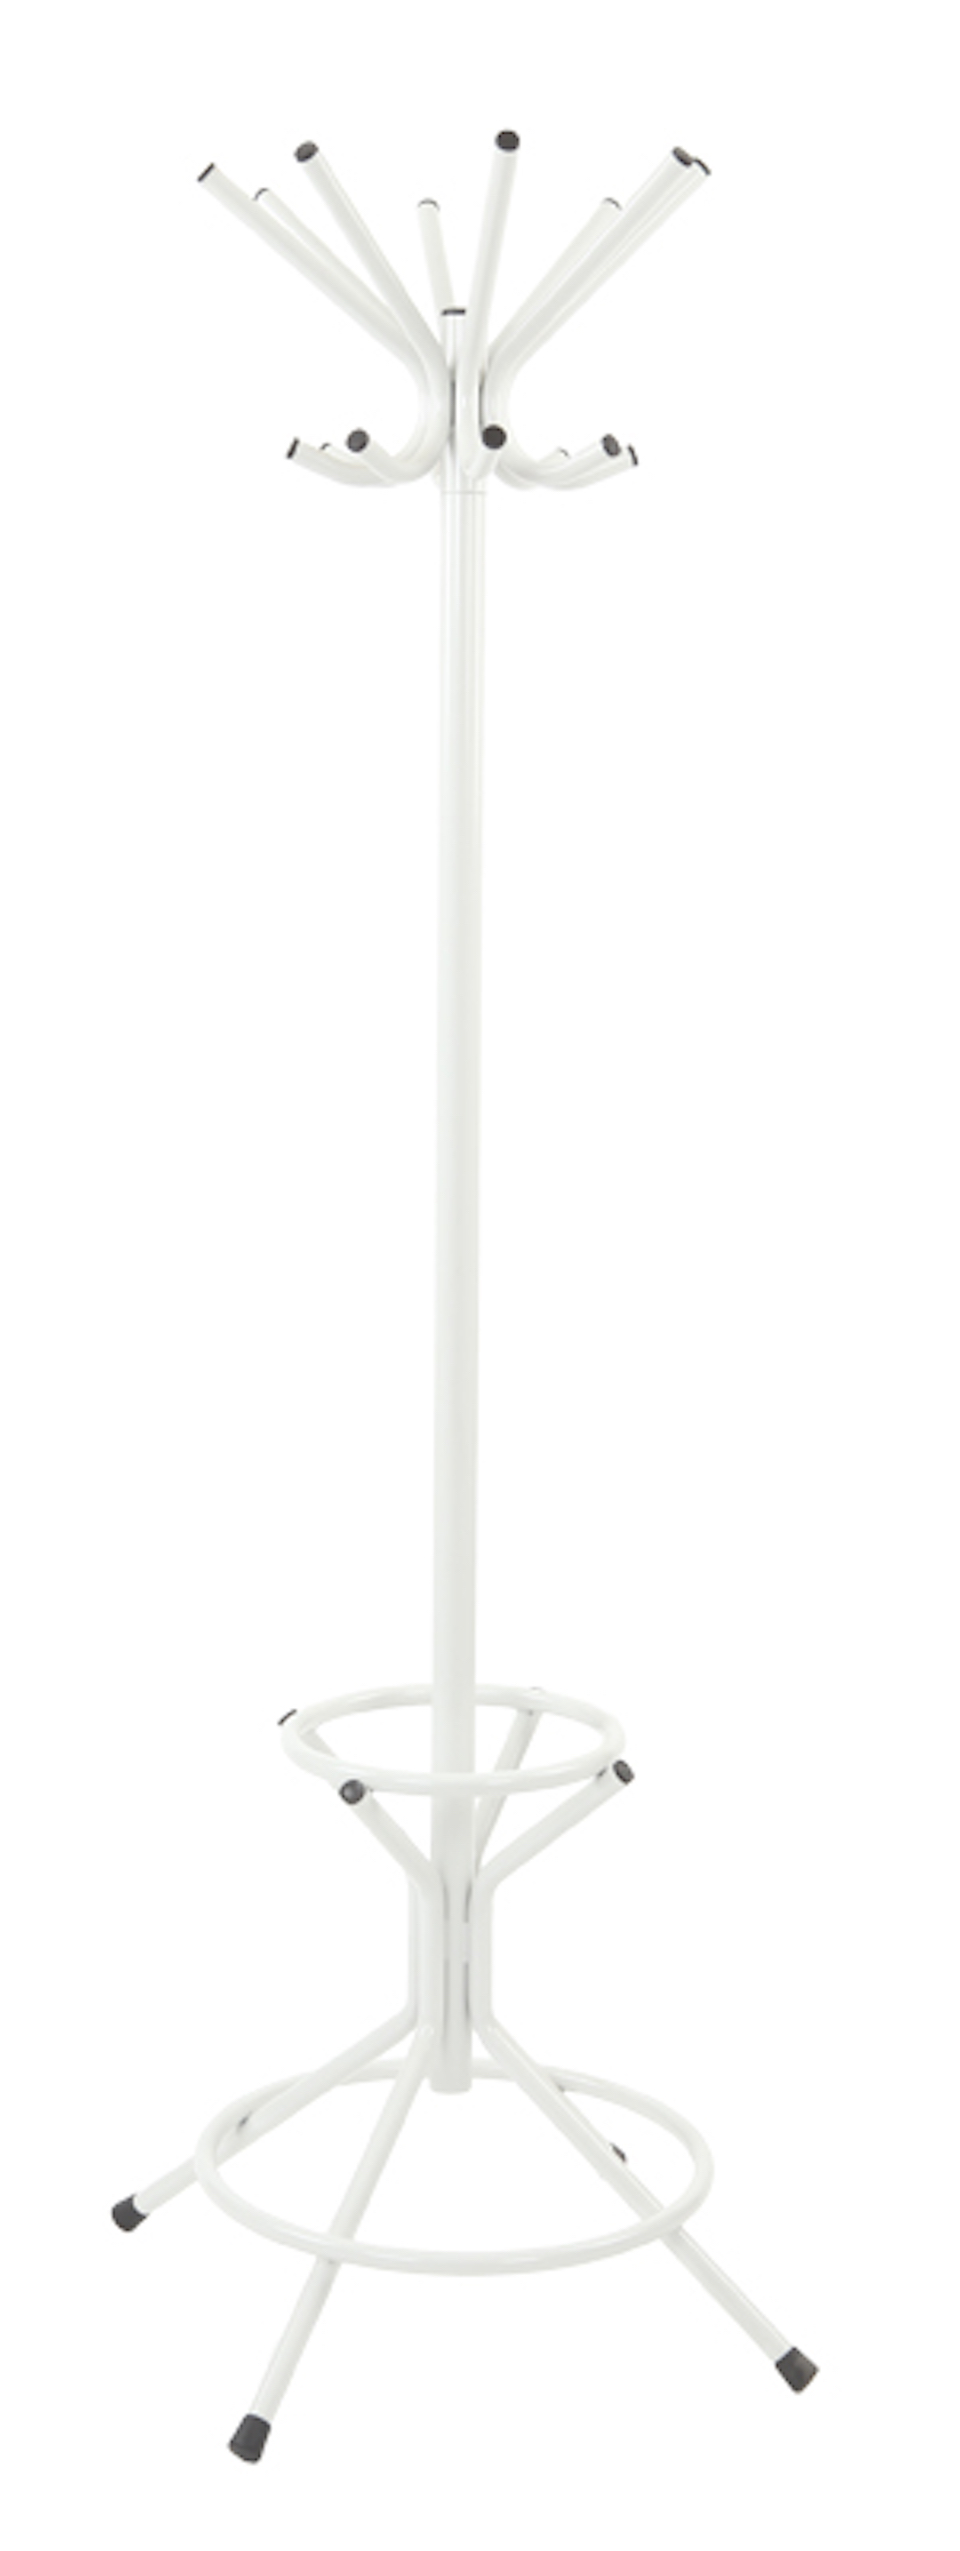 Freistehender Garderoben- & Regenschirmständer aus Metall | Höhe 178cm | Drehbare Krone & 8 Doppelhaken | Grau